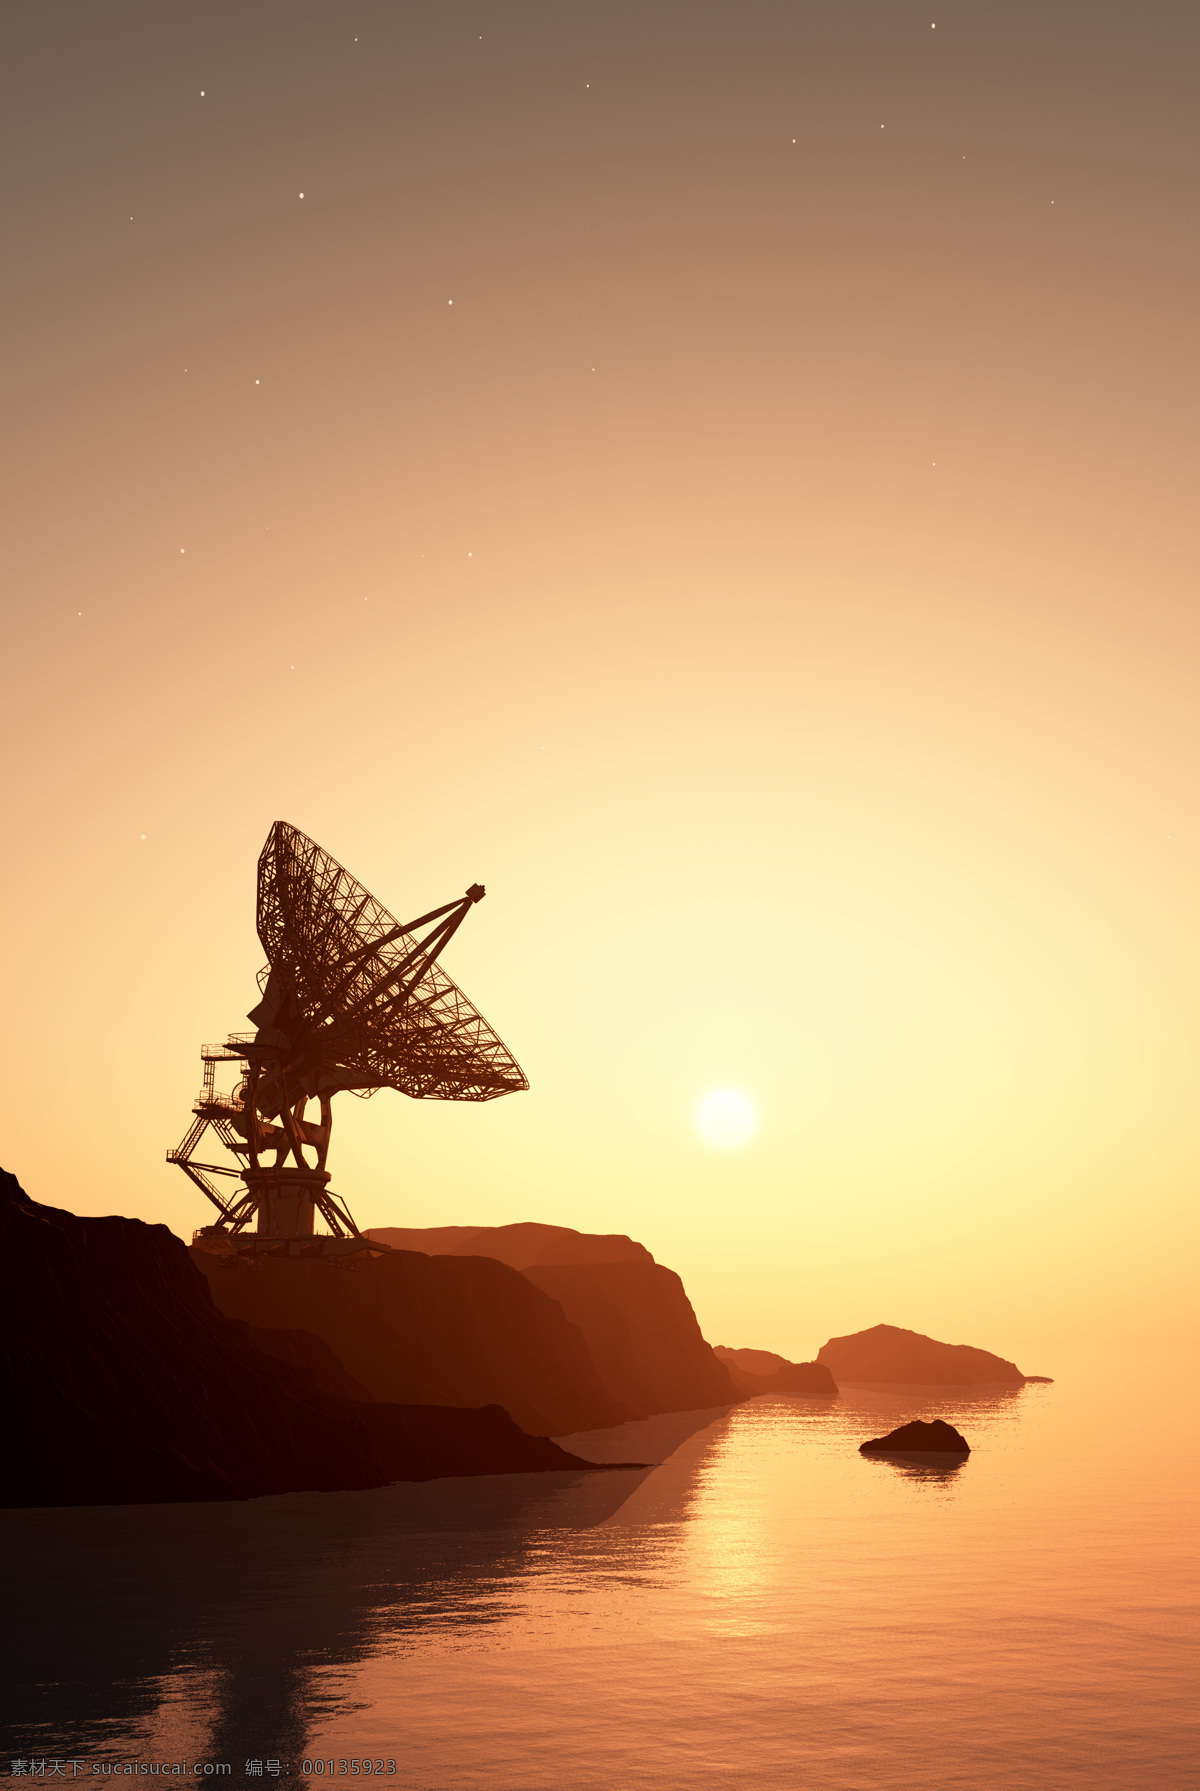 卫星 转播 海岸风景 大海风景 卫星转播 雷达 夕阳风景 海面风景 通讯网络 现代科技